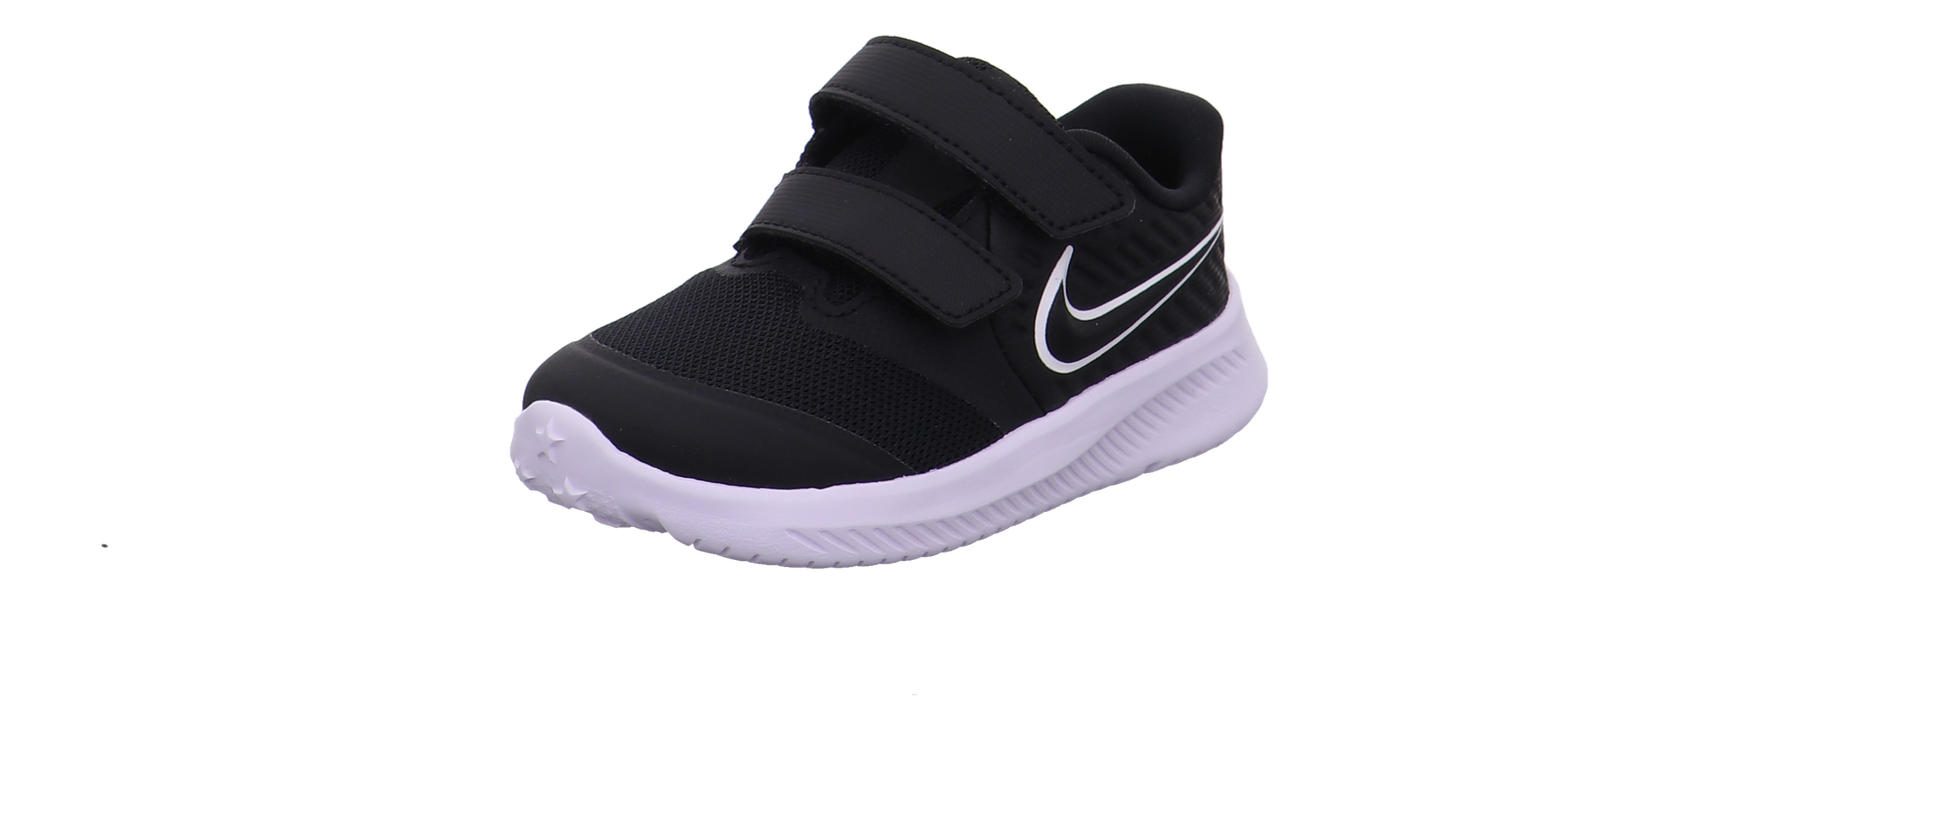 Nike Krabbel- und Lauflernschuhe schwarz-weiß Bild5